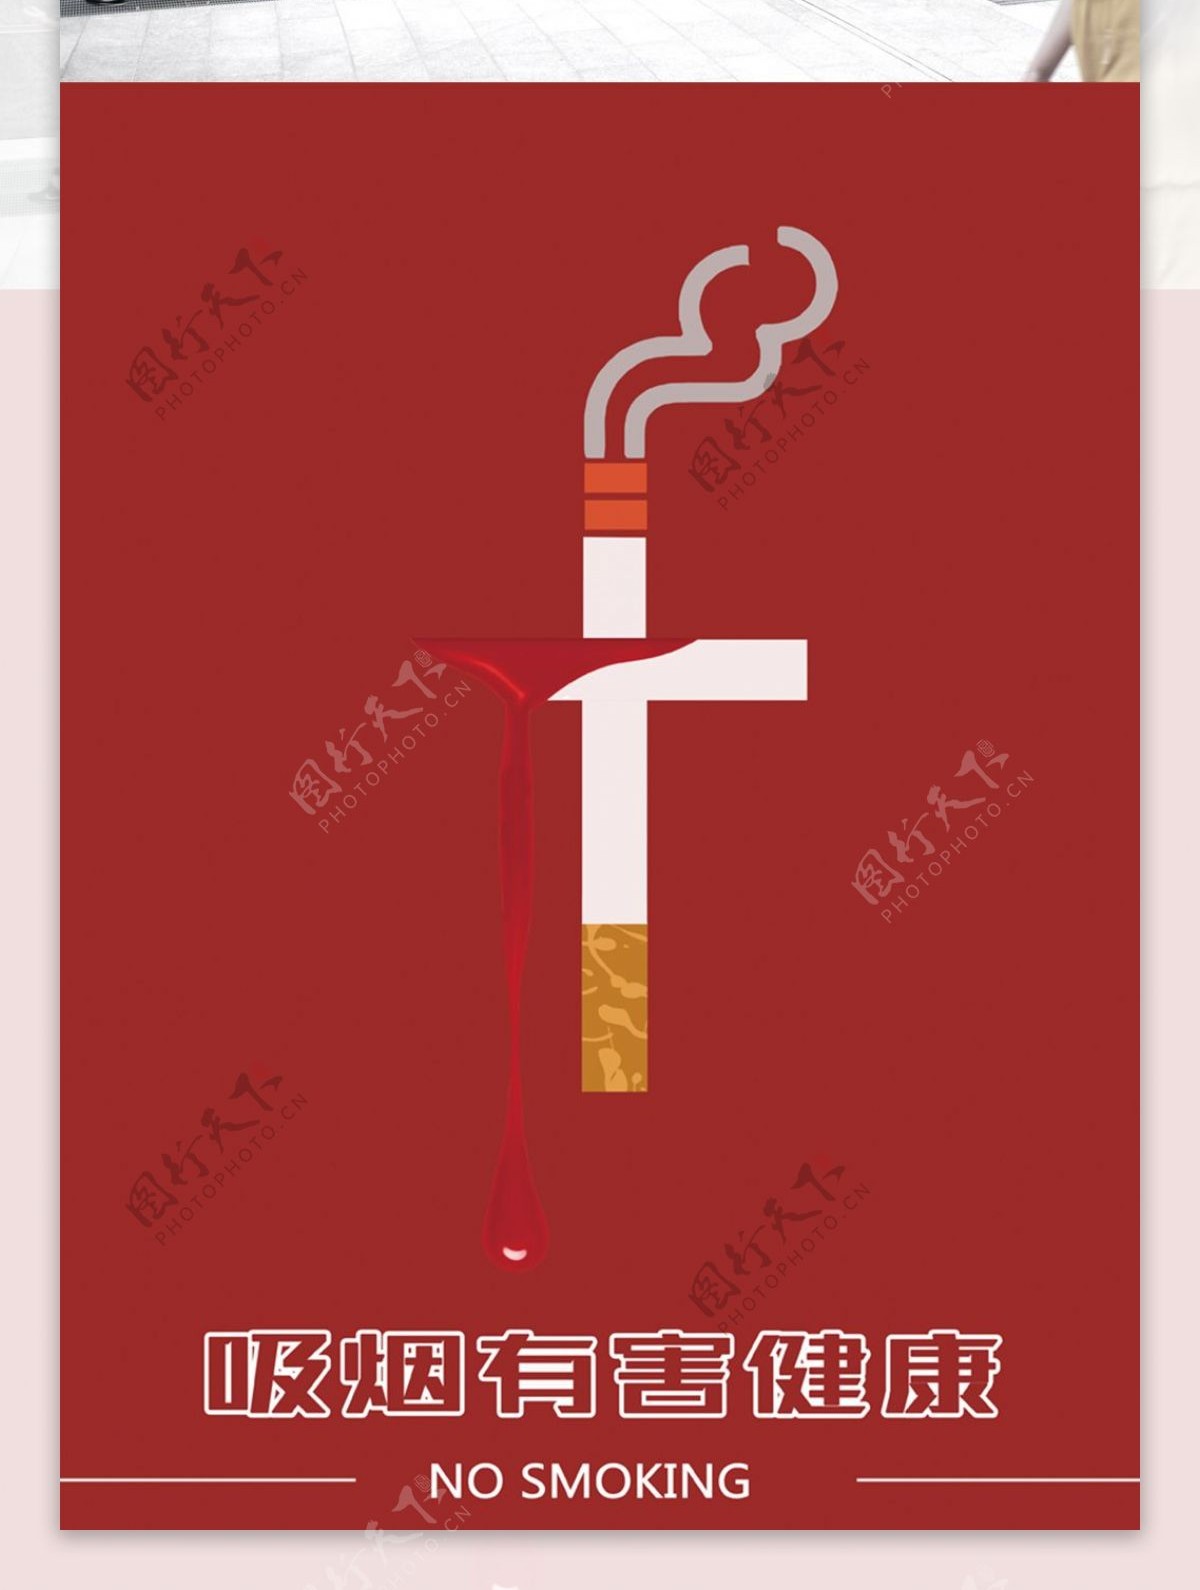 简约红白公益禁烟海报